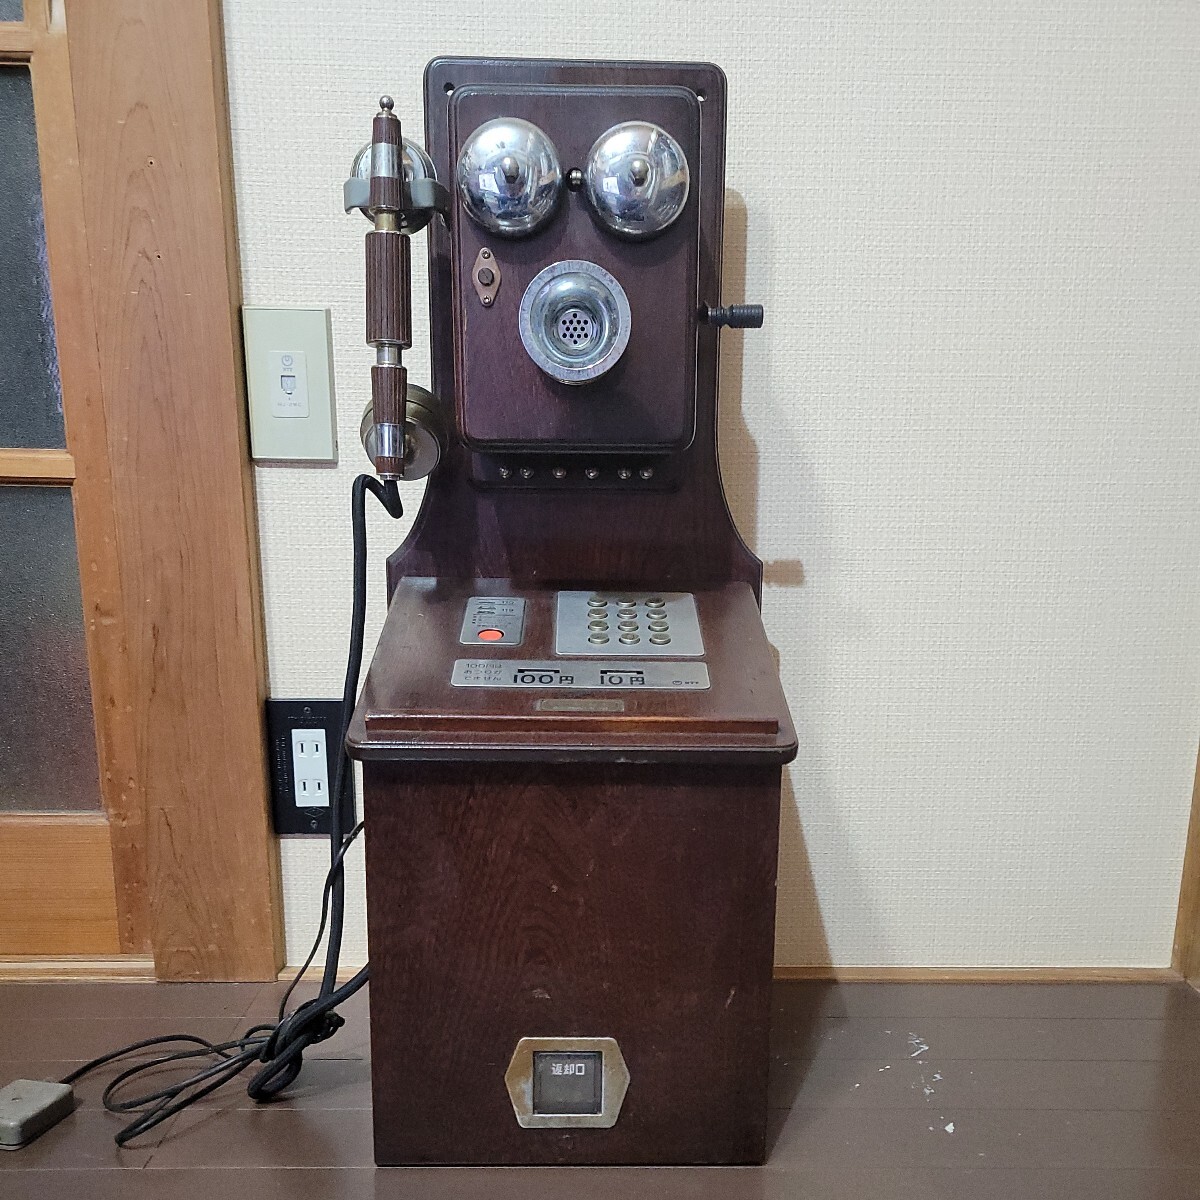  телефонный разговор не возможно Junk Showa Retro Classic розовый TEL P88-0181-1 общественность телефон 1989 год производства Япония электро- доверие телефон ...NTT из дерева 